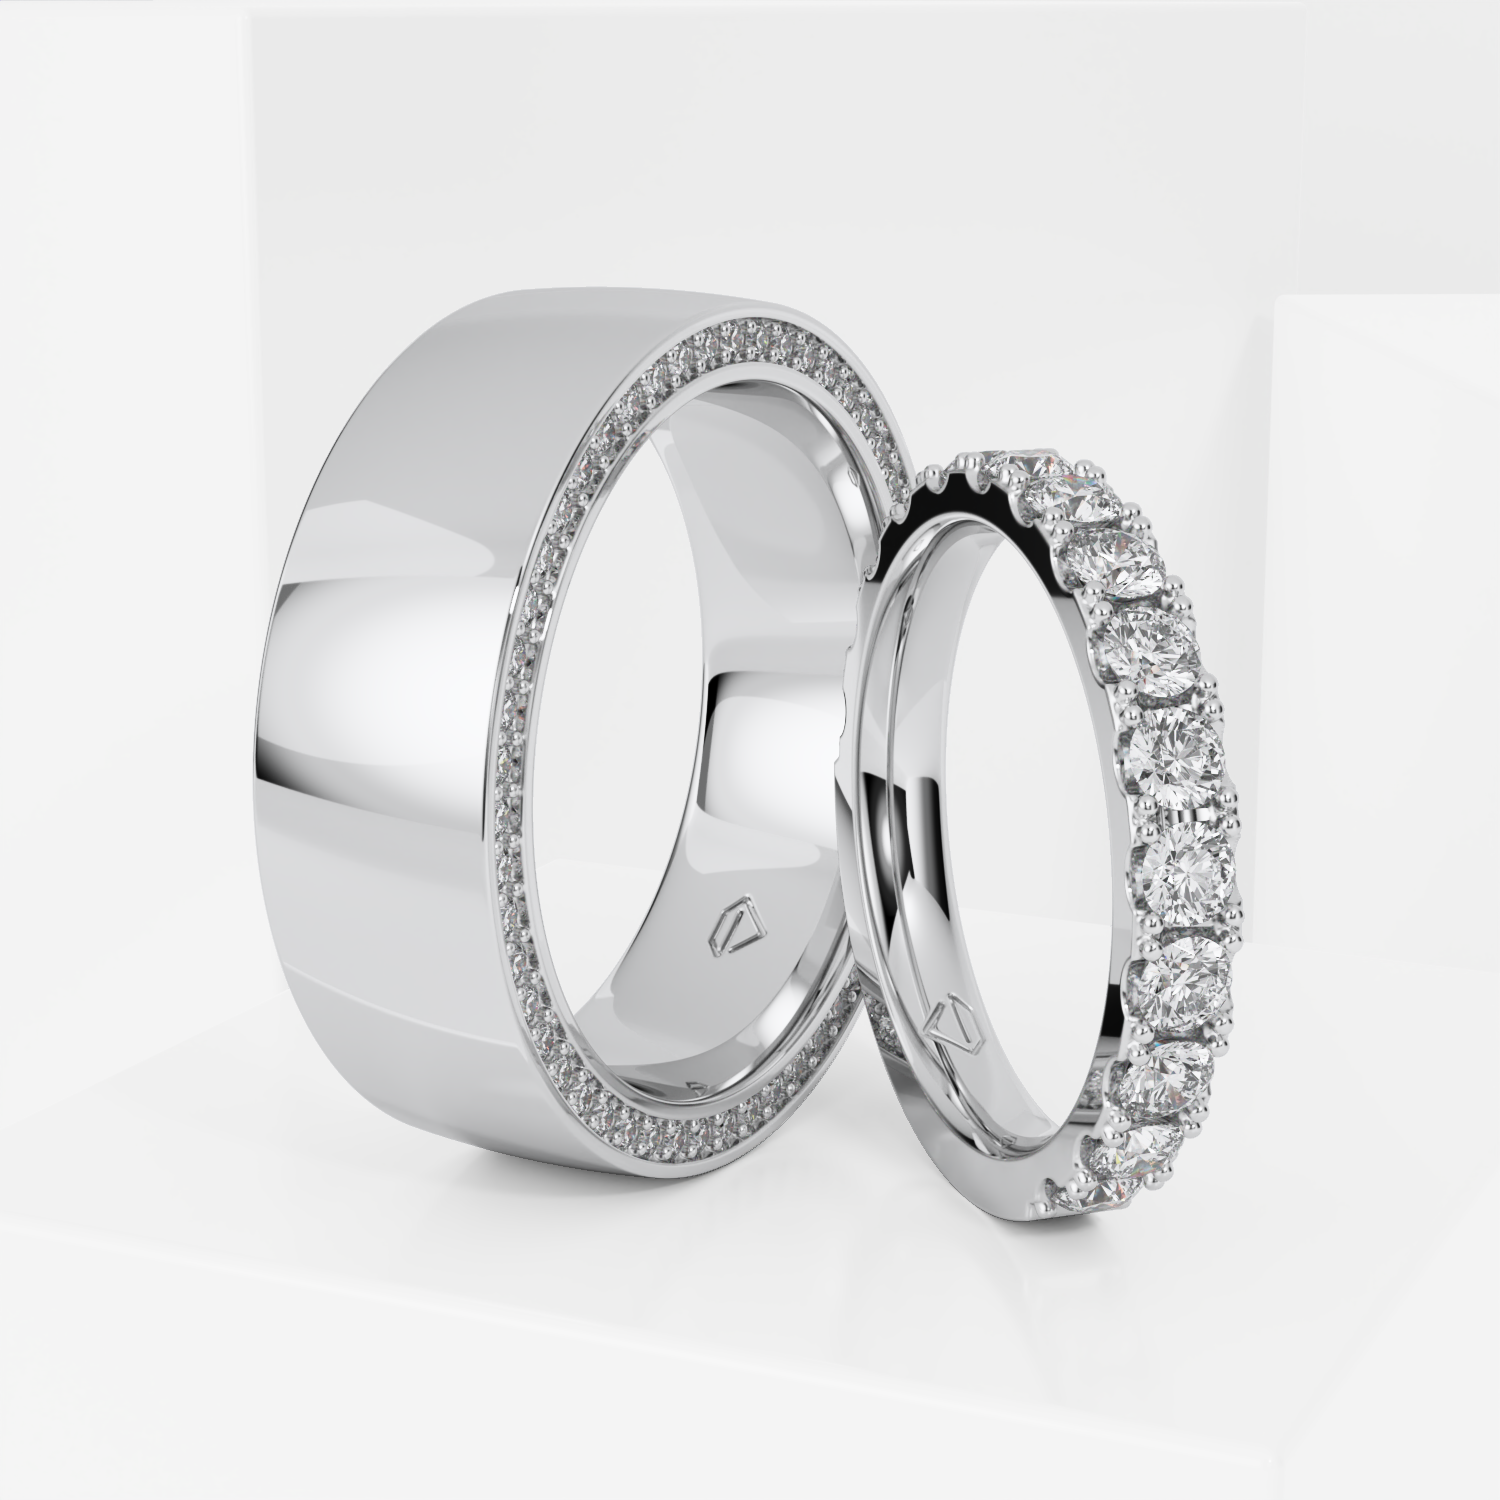 Парные обручальные кольца на заказ, цена на изготовление свадебного кольца с бриллиантами в Москве